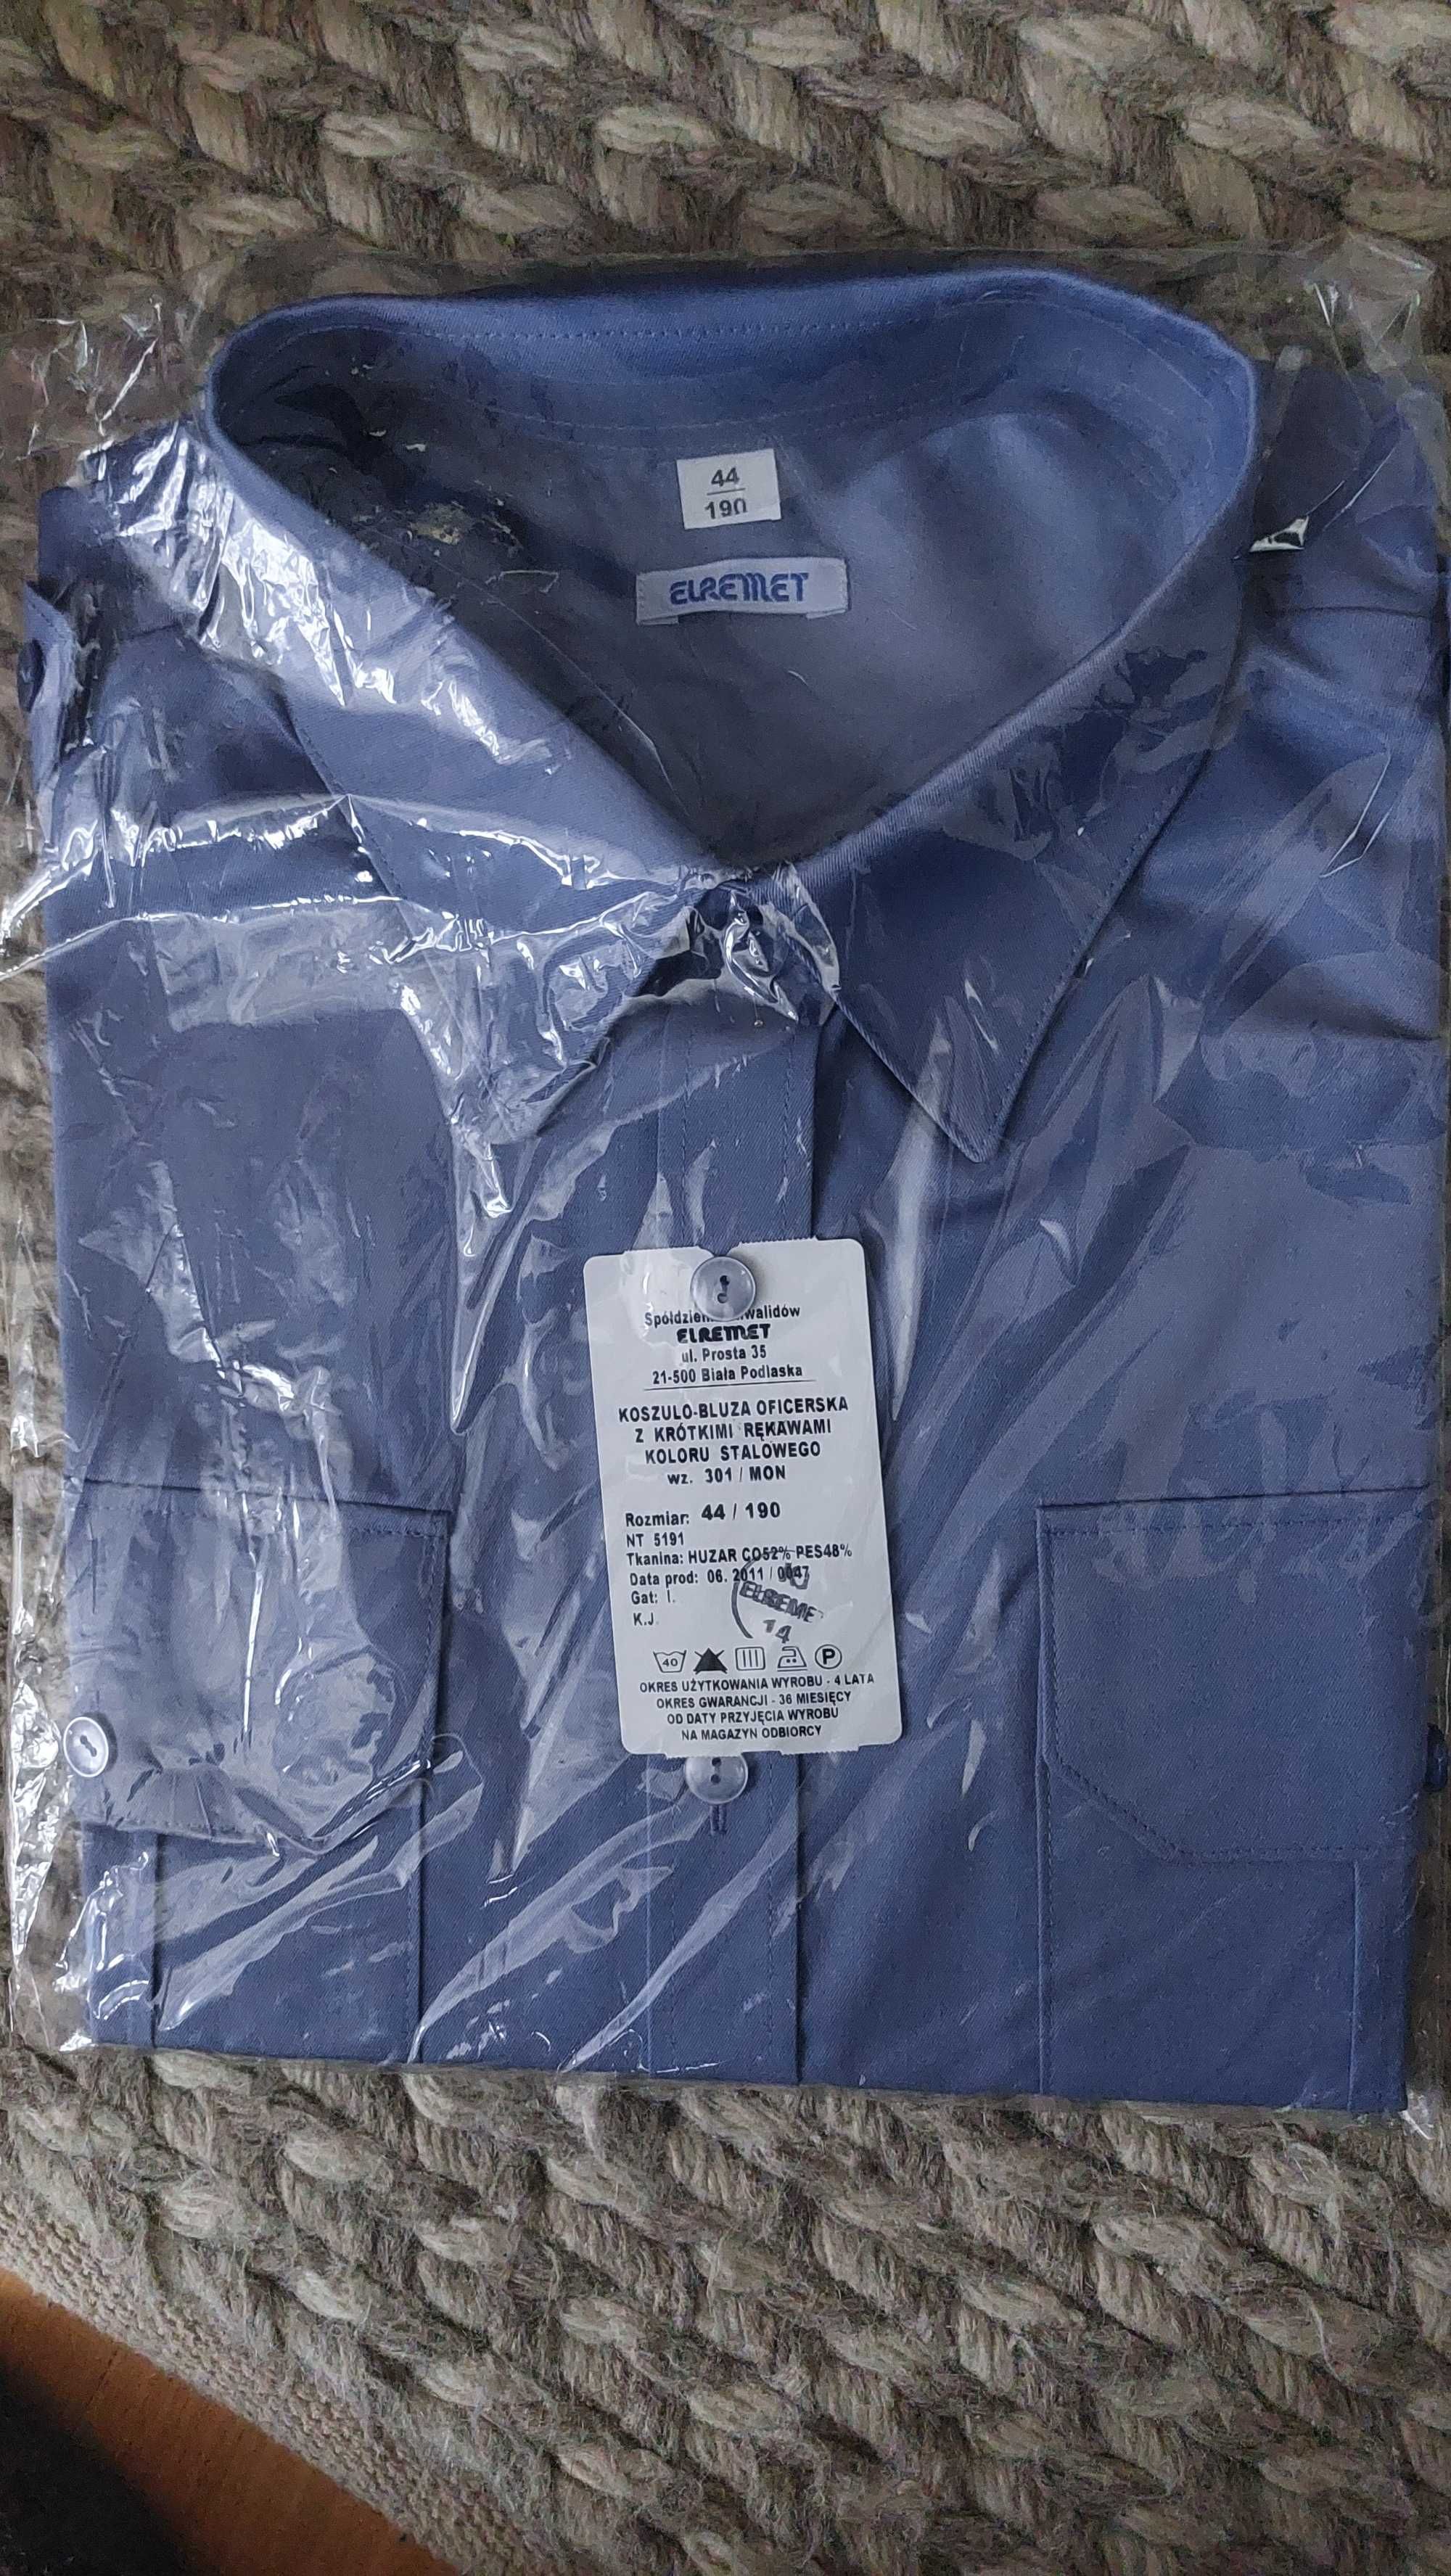 Koszulo bluza oficerska z krótkimi rękawami stalowa wz 301 r. 44/190